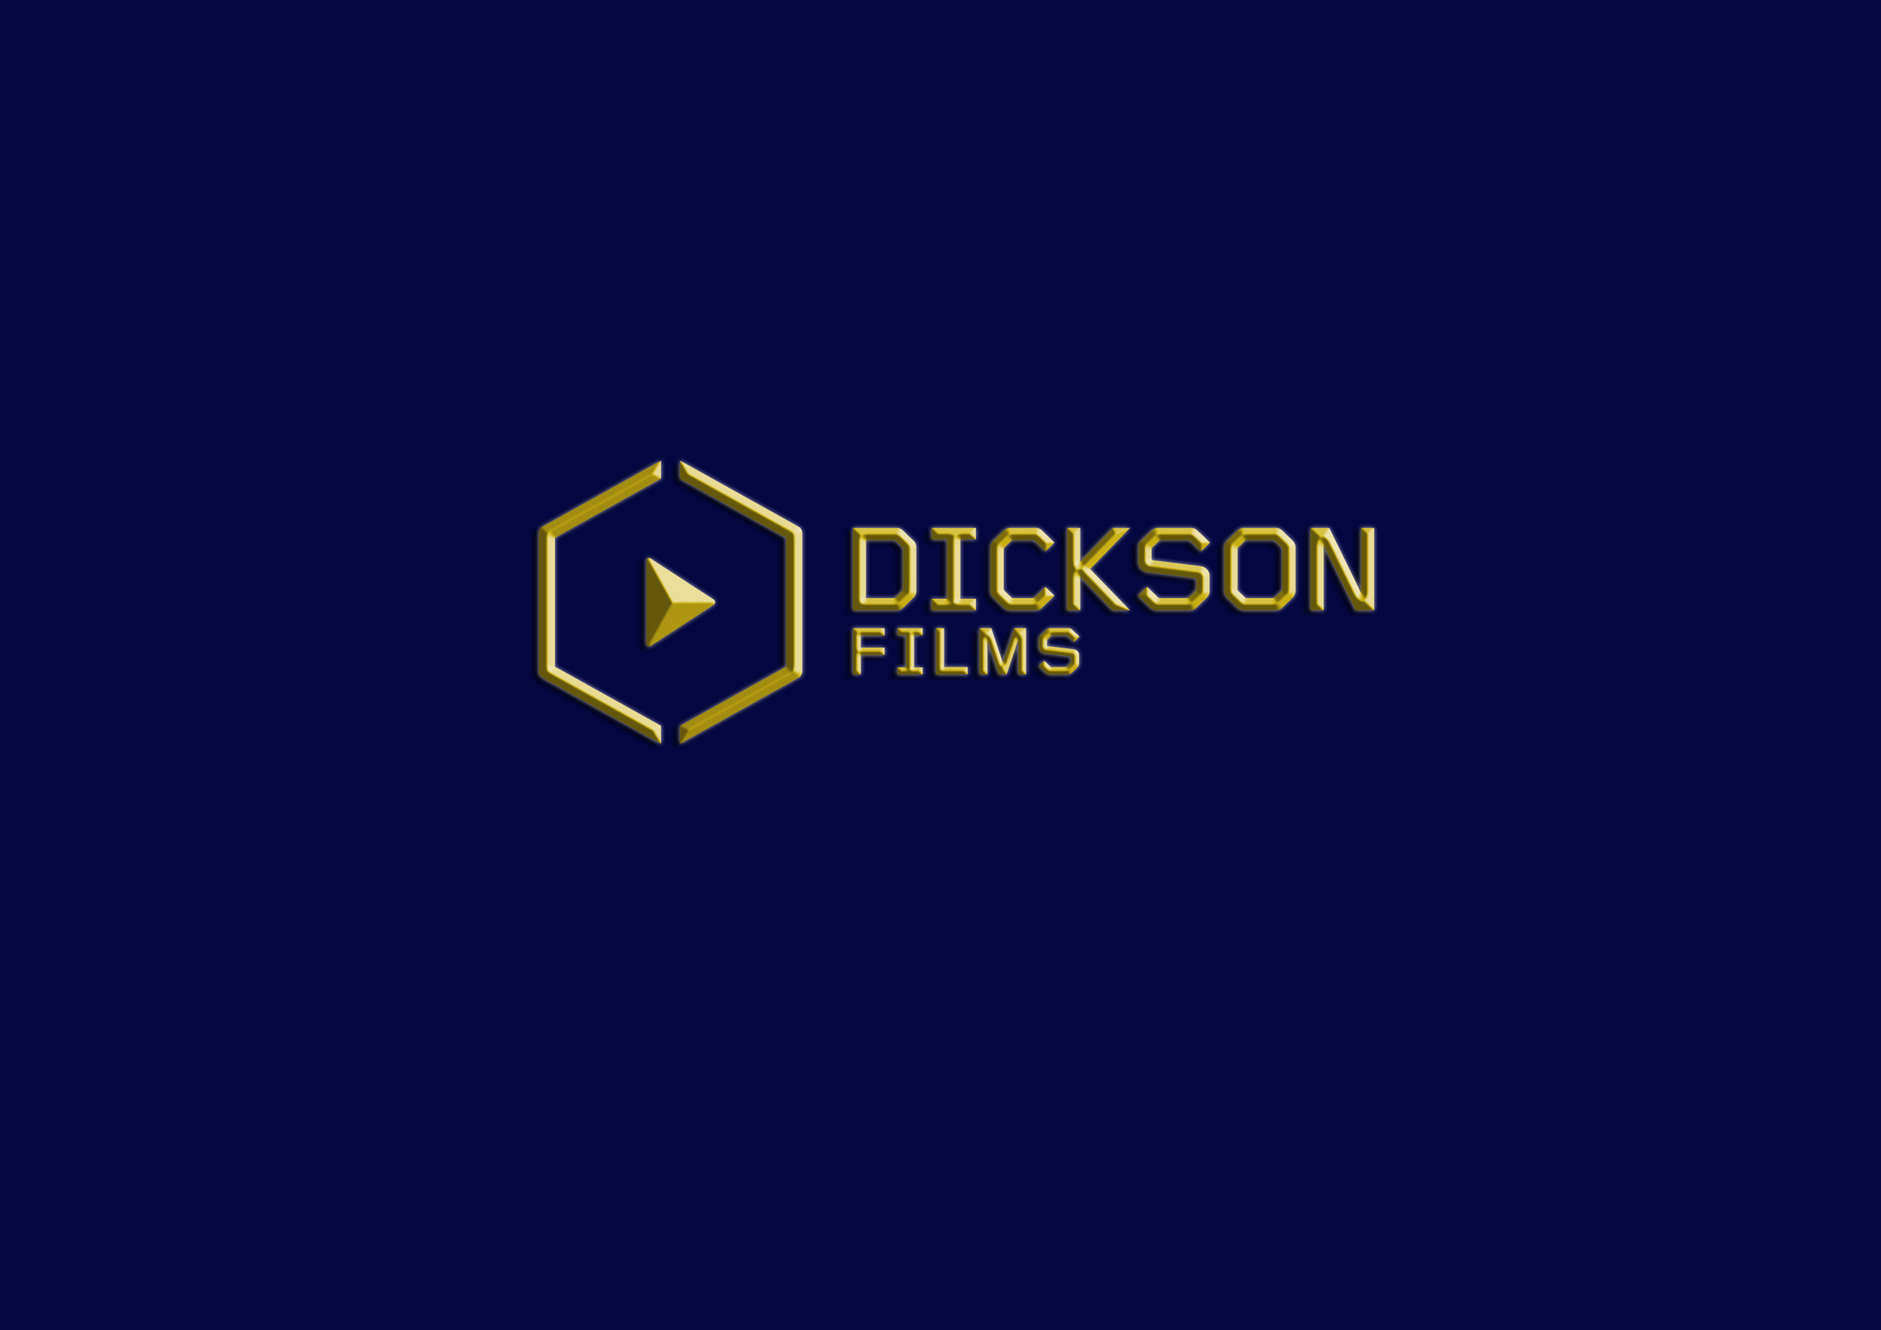 www.dicksonfilms.com.au